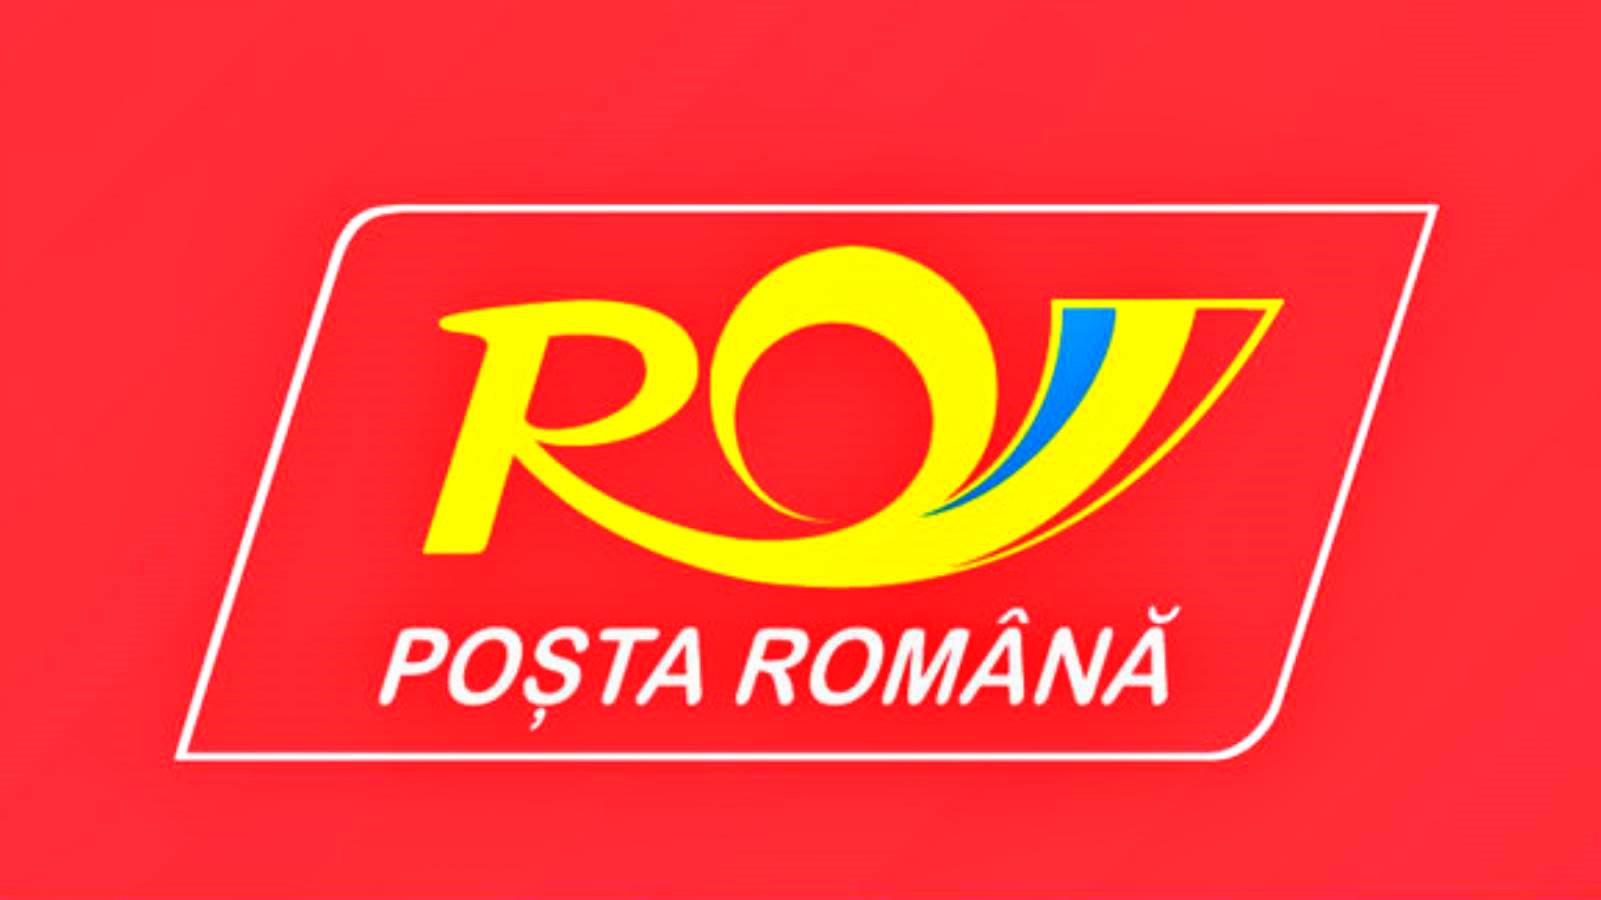 Rumänska postens officiella lista över artiklar som är förbjudna för frakt